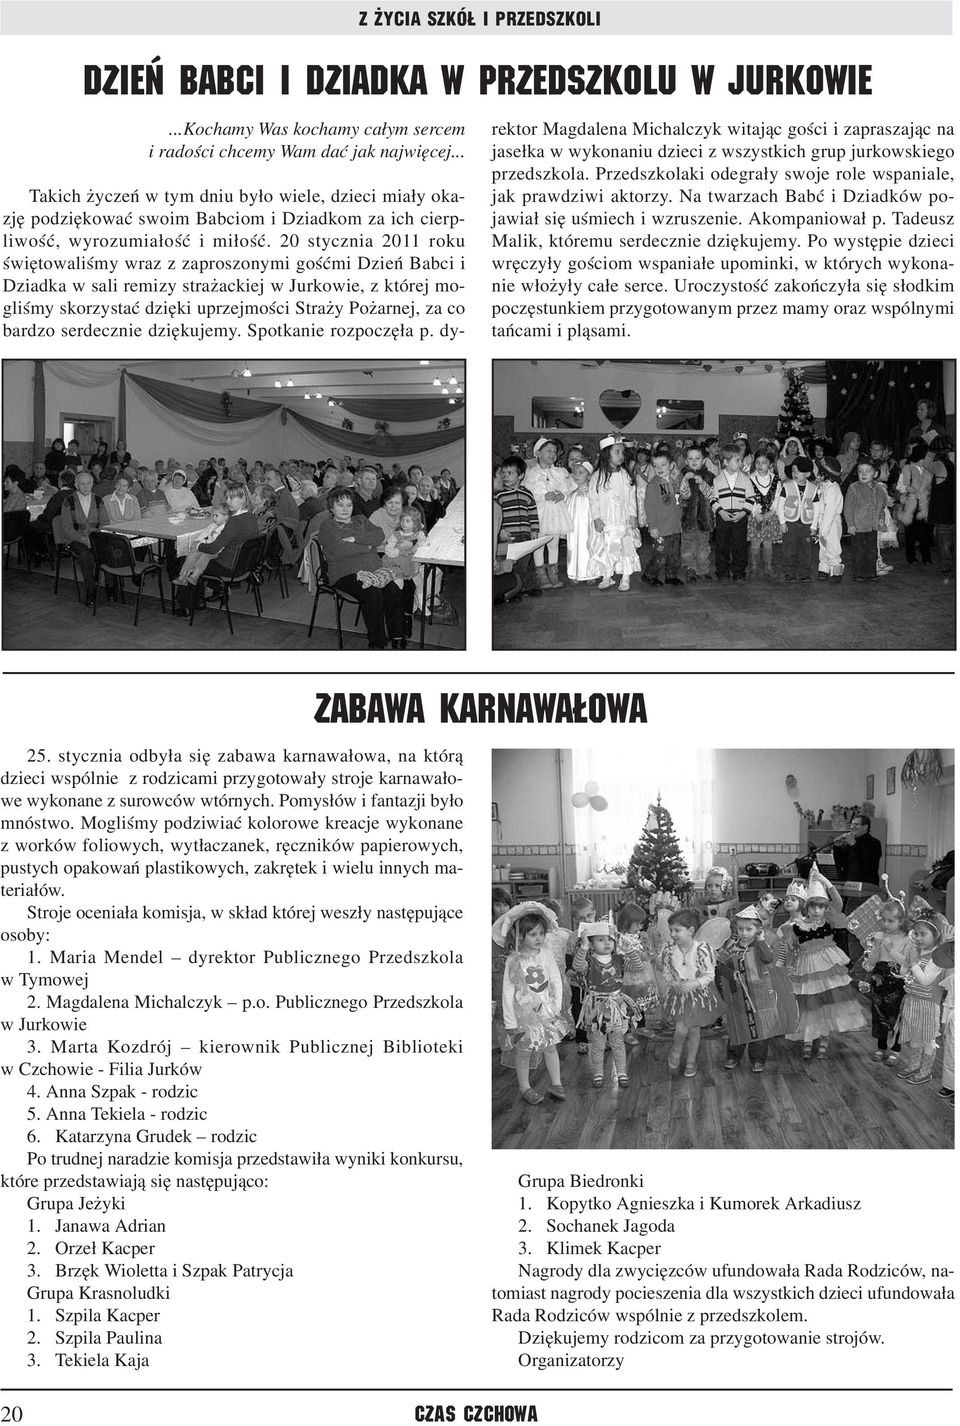 20 stycznia 2011 roku świętowaliśmy wraz z zaproszonymi gośćmi Dzień Babci i Dziadka w sali remizy strażackiej w Jurkowie, z której mogliśmy skorzystać dzięki uprzejmości Straży Pożarnej, za co